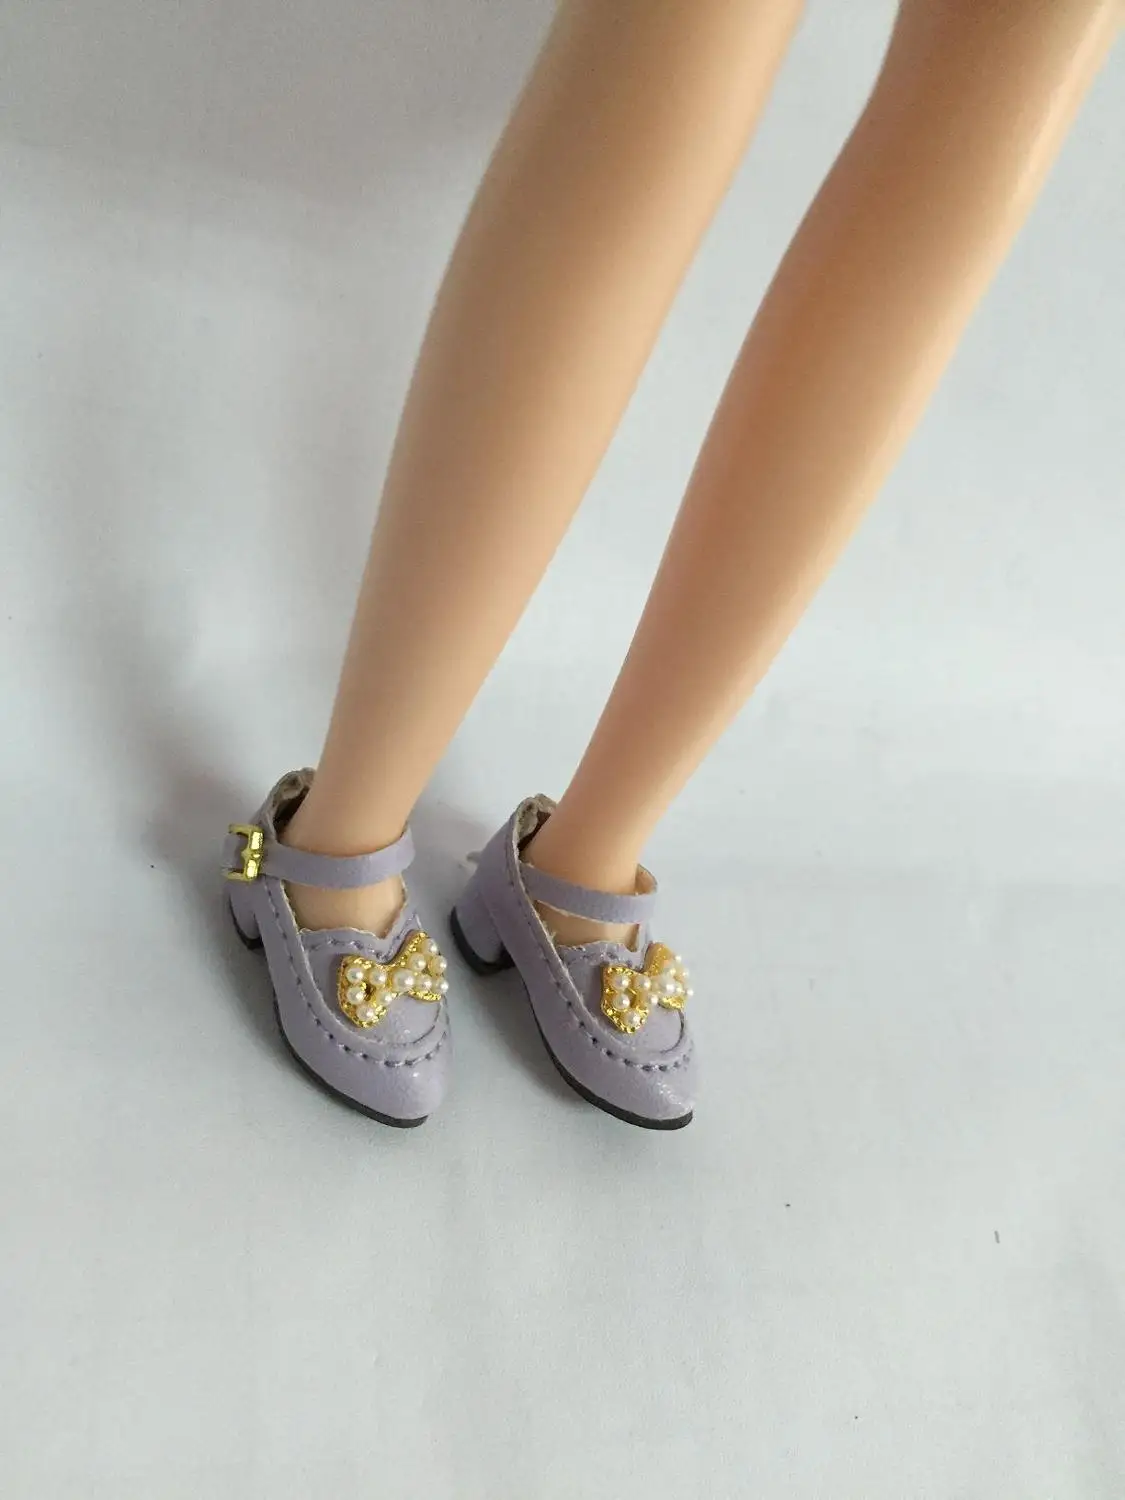 Куклы обувь для blyth Azone куклы OB кукла licca и т. д. Длина: 2,8 см повседневная обувь на плоской подошве - Цвет: purple